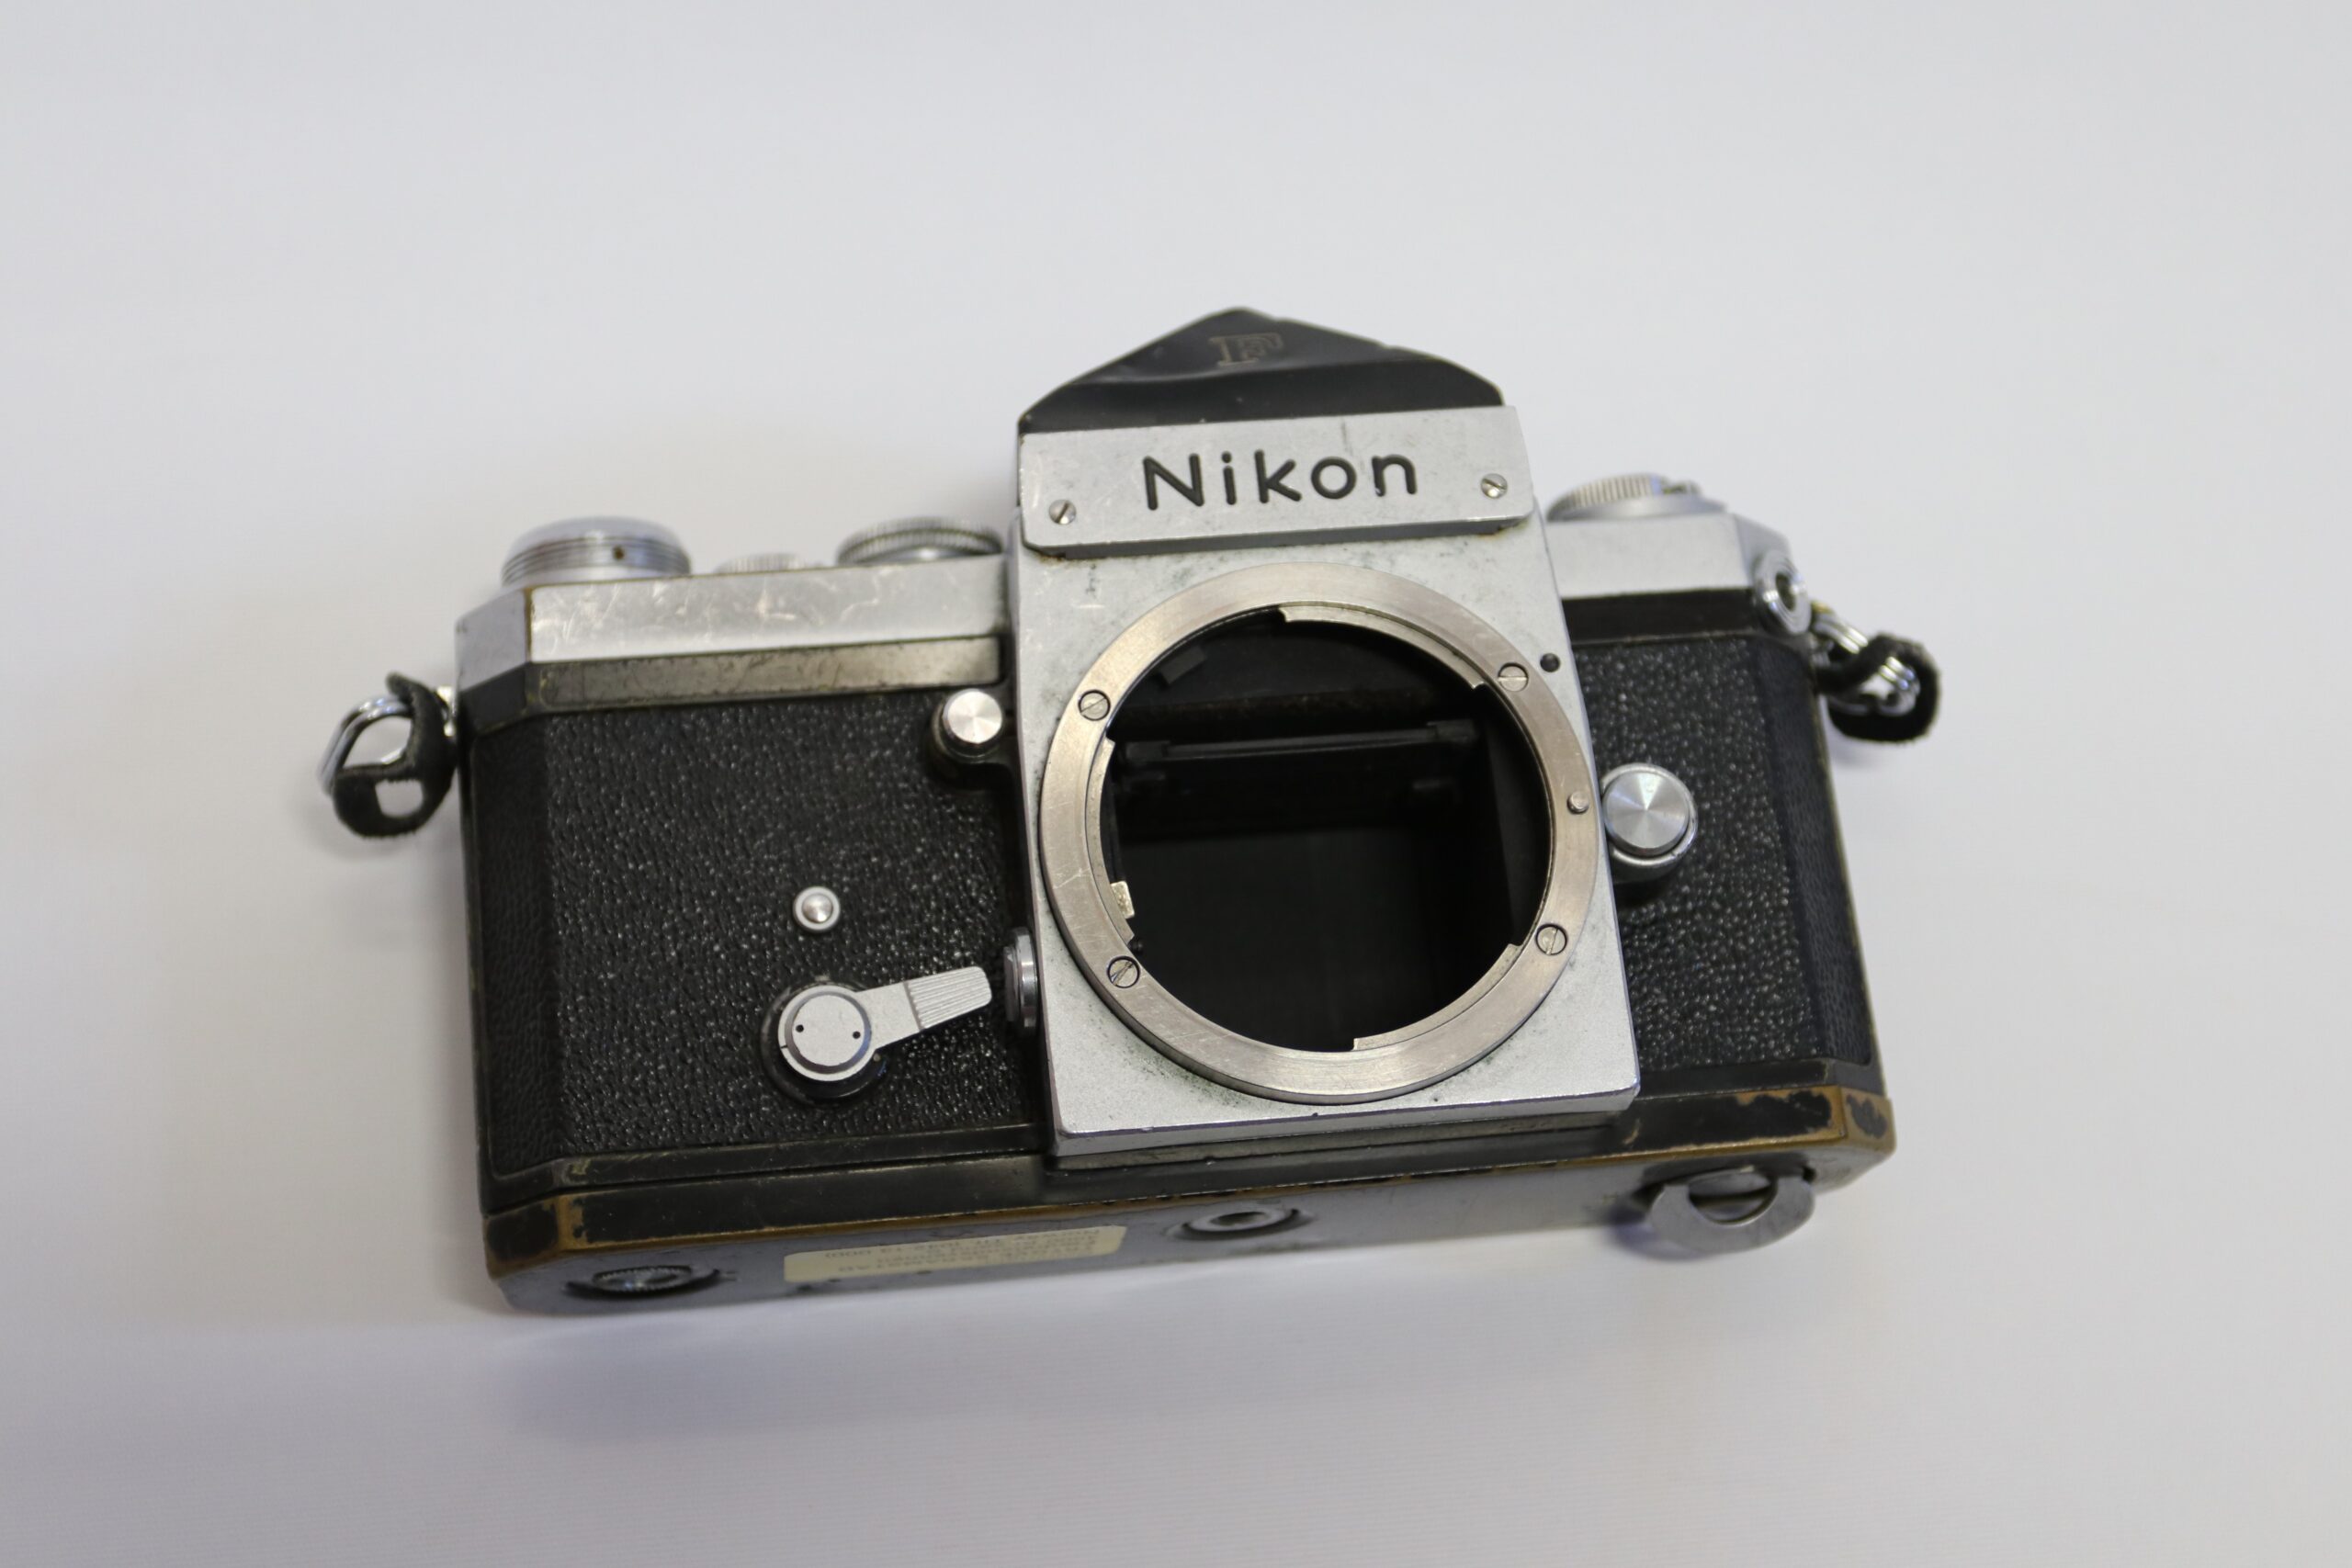 Nikon F kamera fra Fædrelandsvennens fotograf Trygve Skramstad